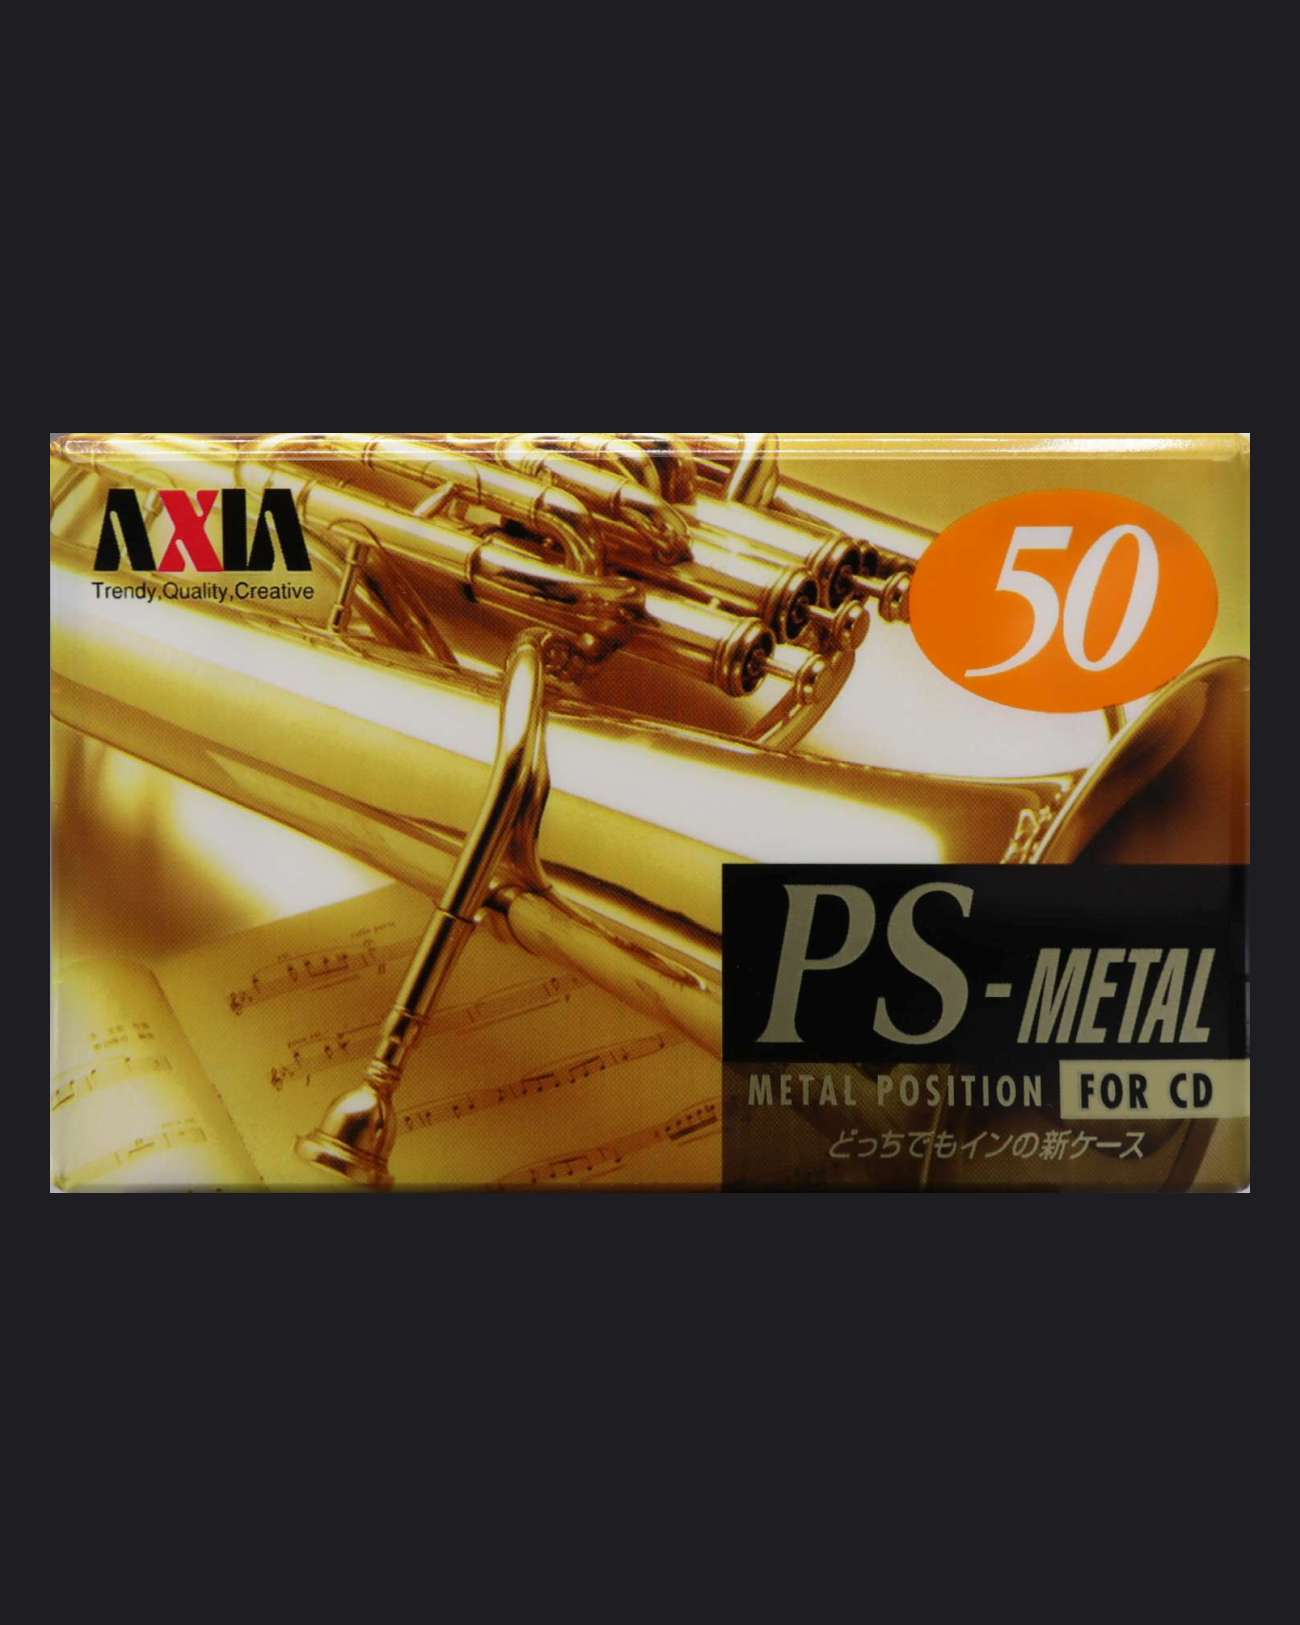 AXIA PS-Metal (1996 JP)